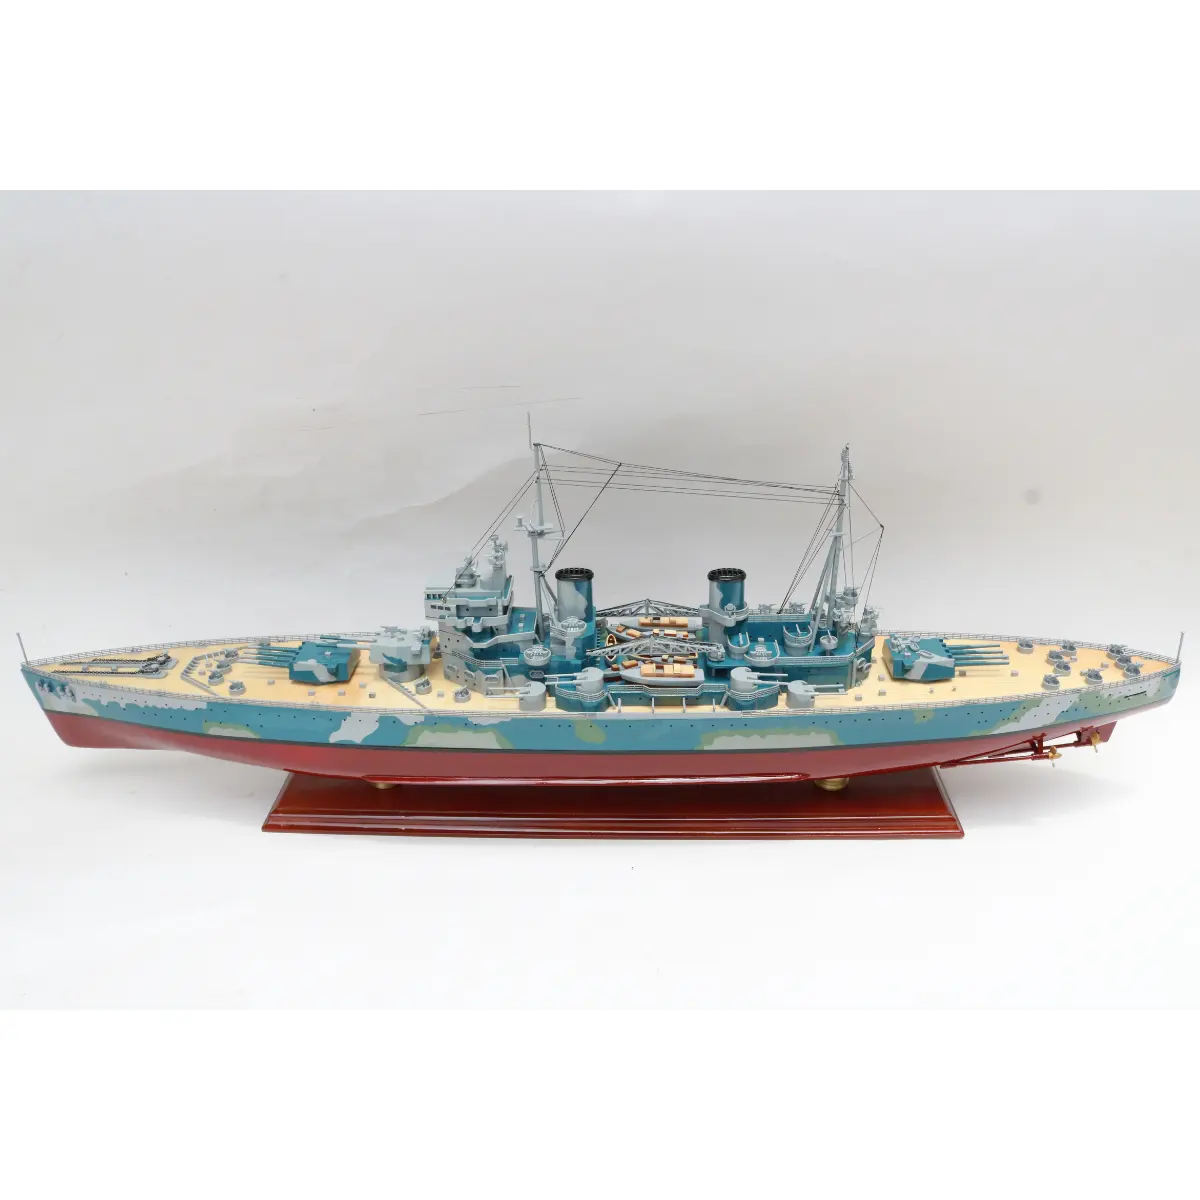 HMS KING GEORGE V BATTLE SHIP MODEL - HANDCRAFTED WAR SHIP DISPLAY MODEL - WOODEN HANDICRAFT MODEL BOAT